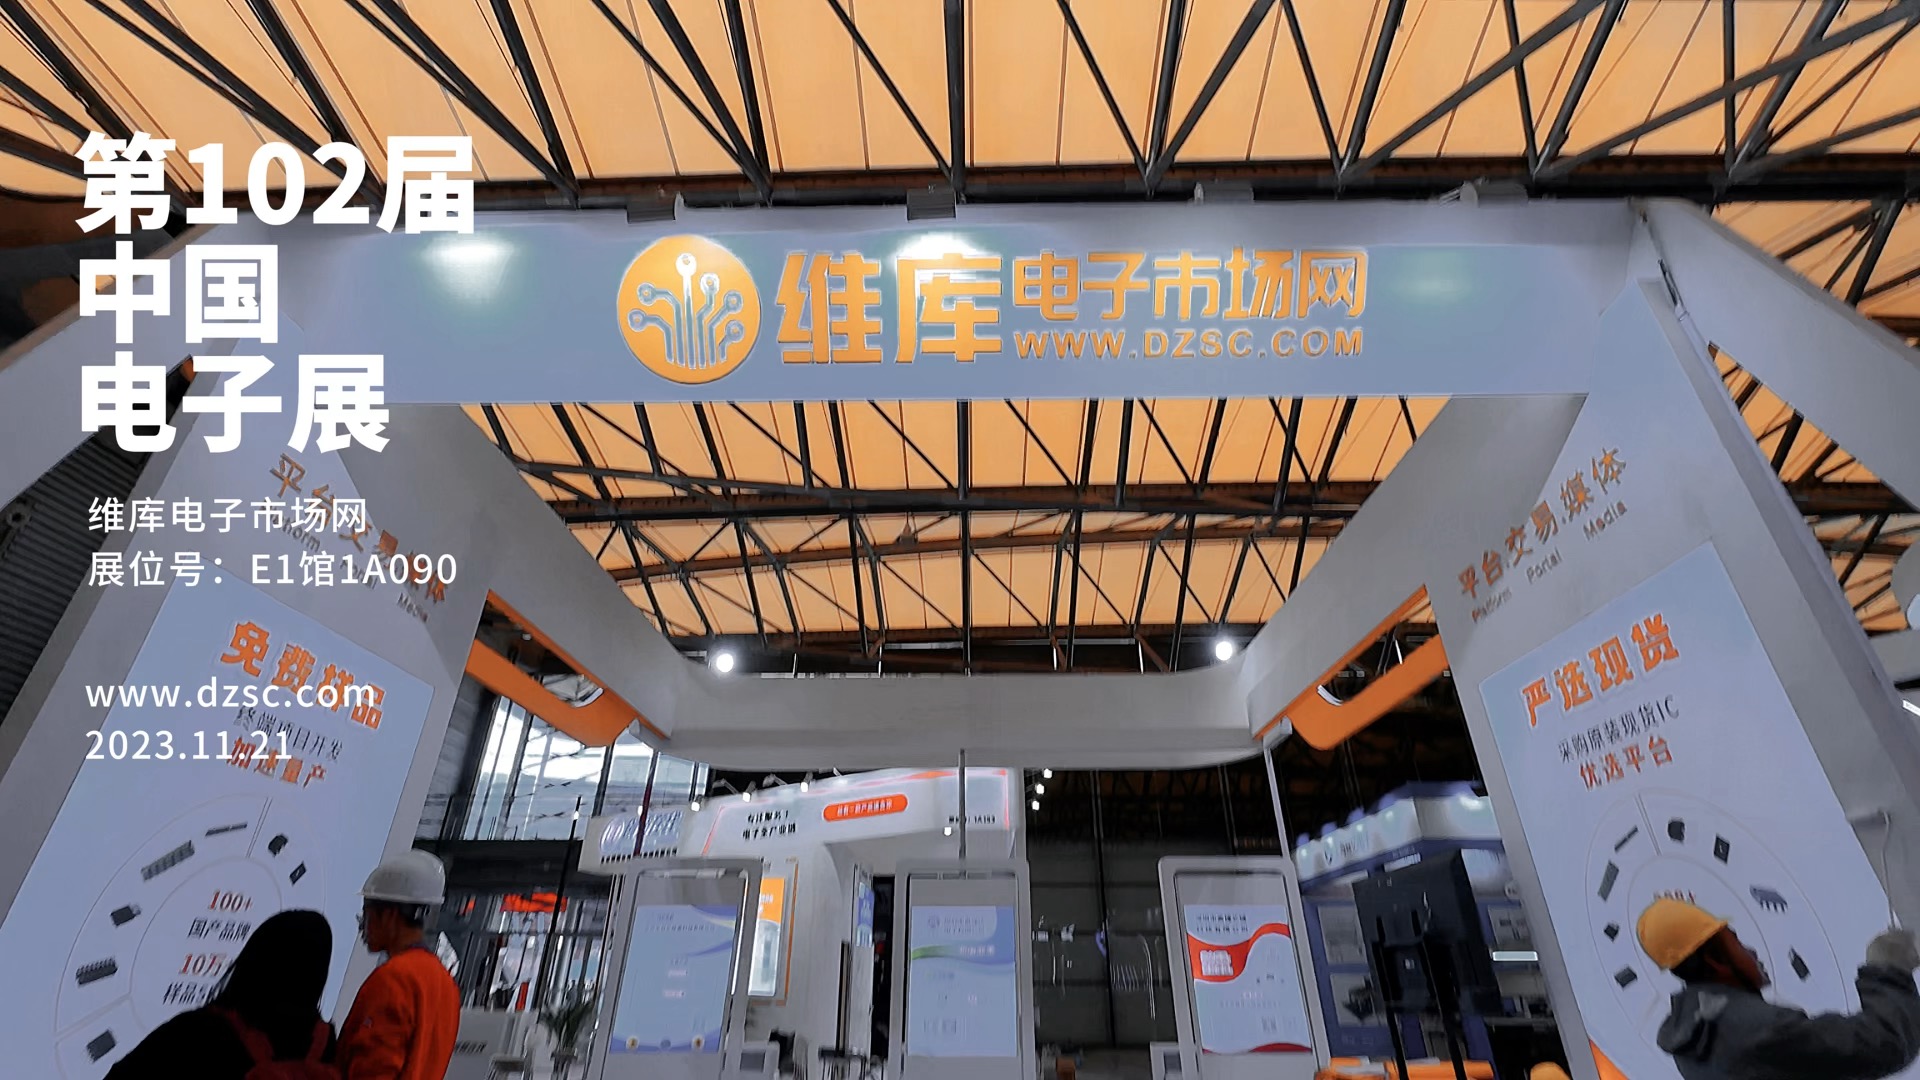 第102届上海电子展，维库网展台E1馆1A090,欢迎您的到来